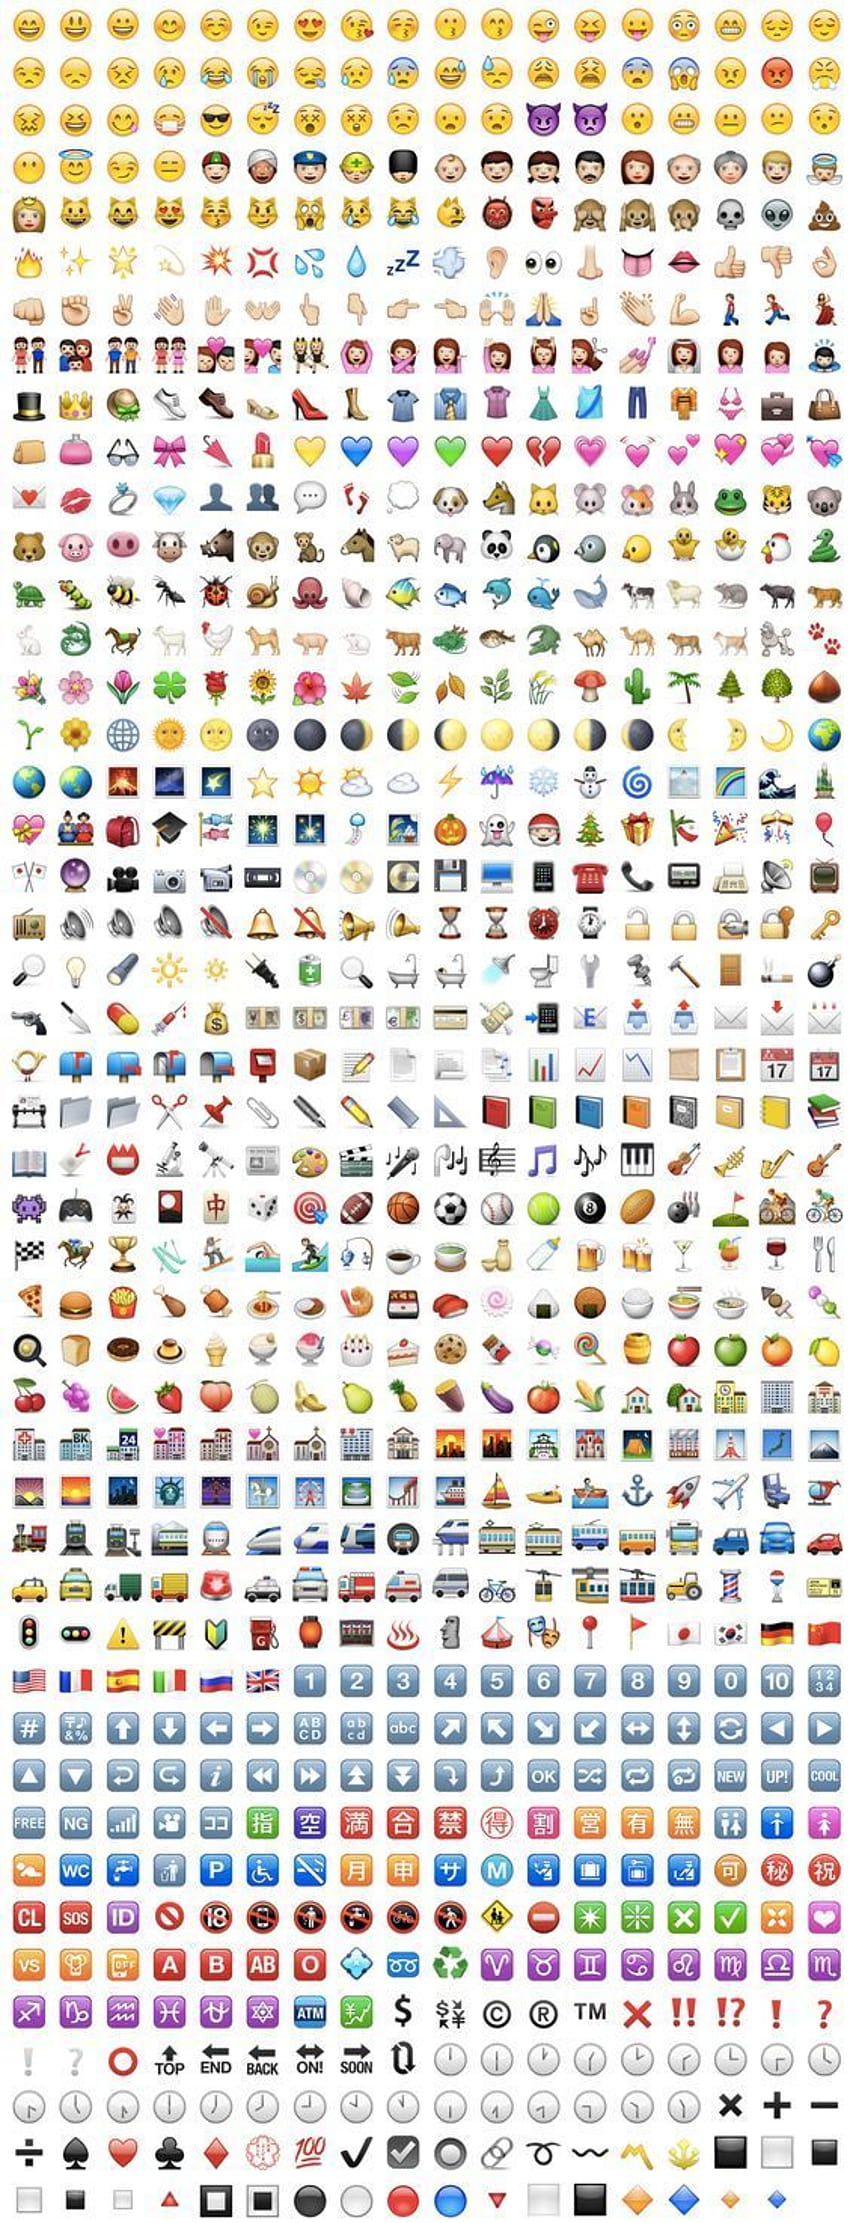 Apple Emoji List, copier et coller Fond d'écran de téléphone HD